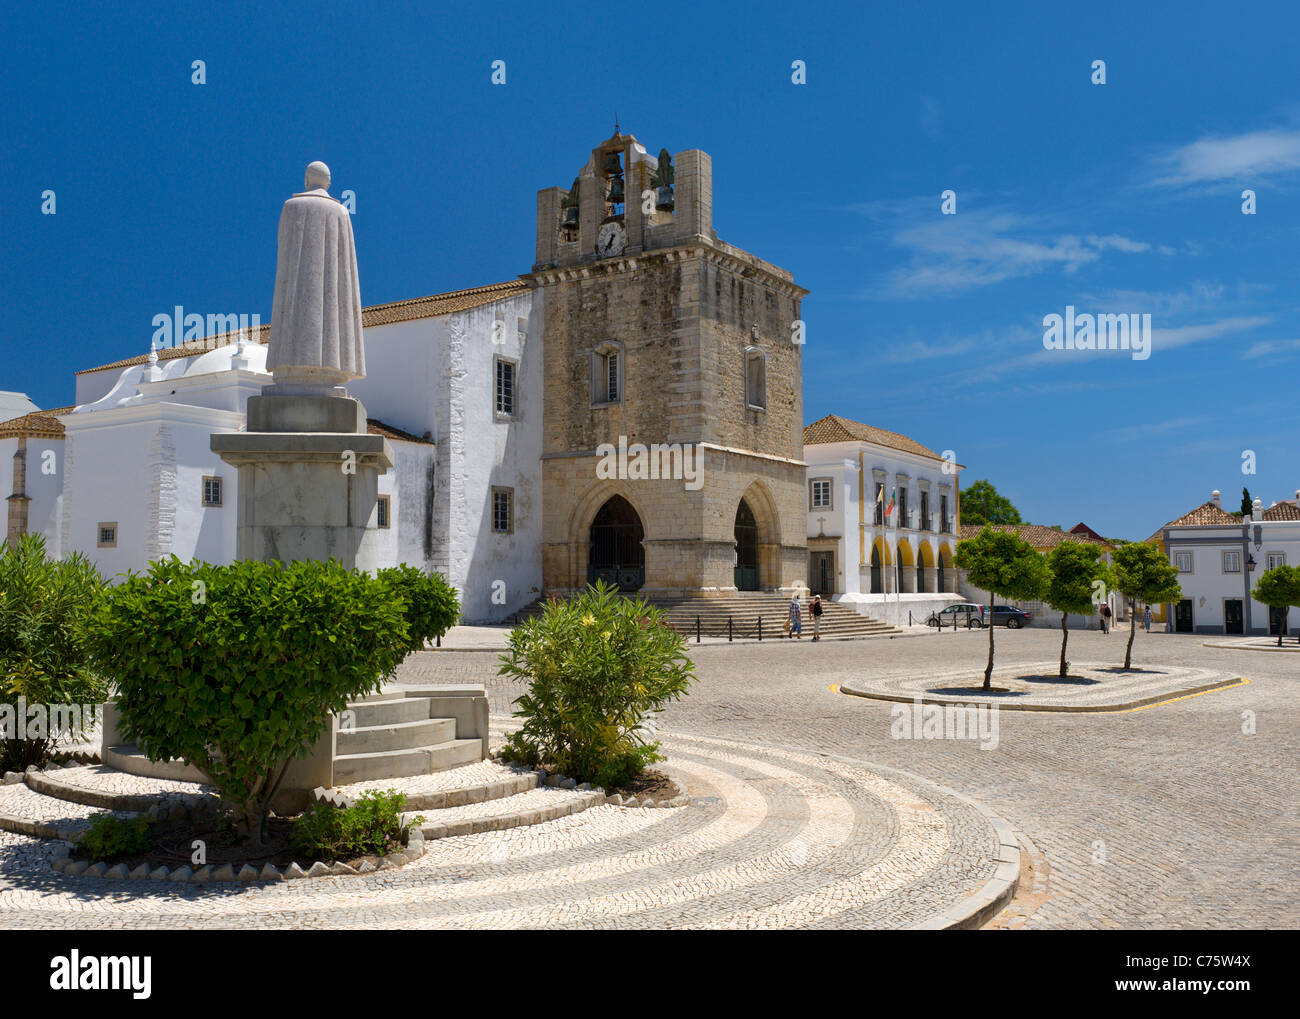 Portugal, Faro cathedral in the largo da Sé square Stock Photo